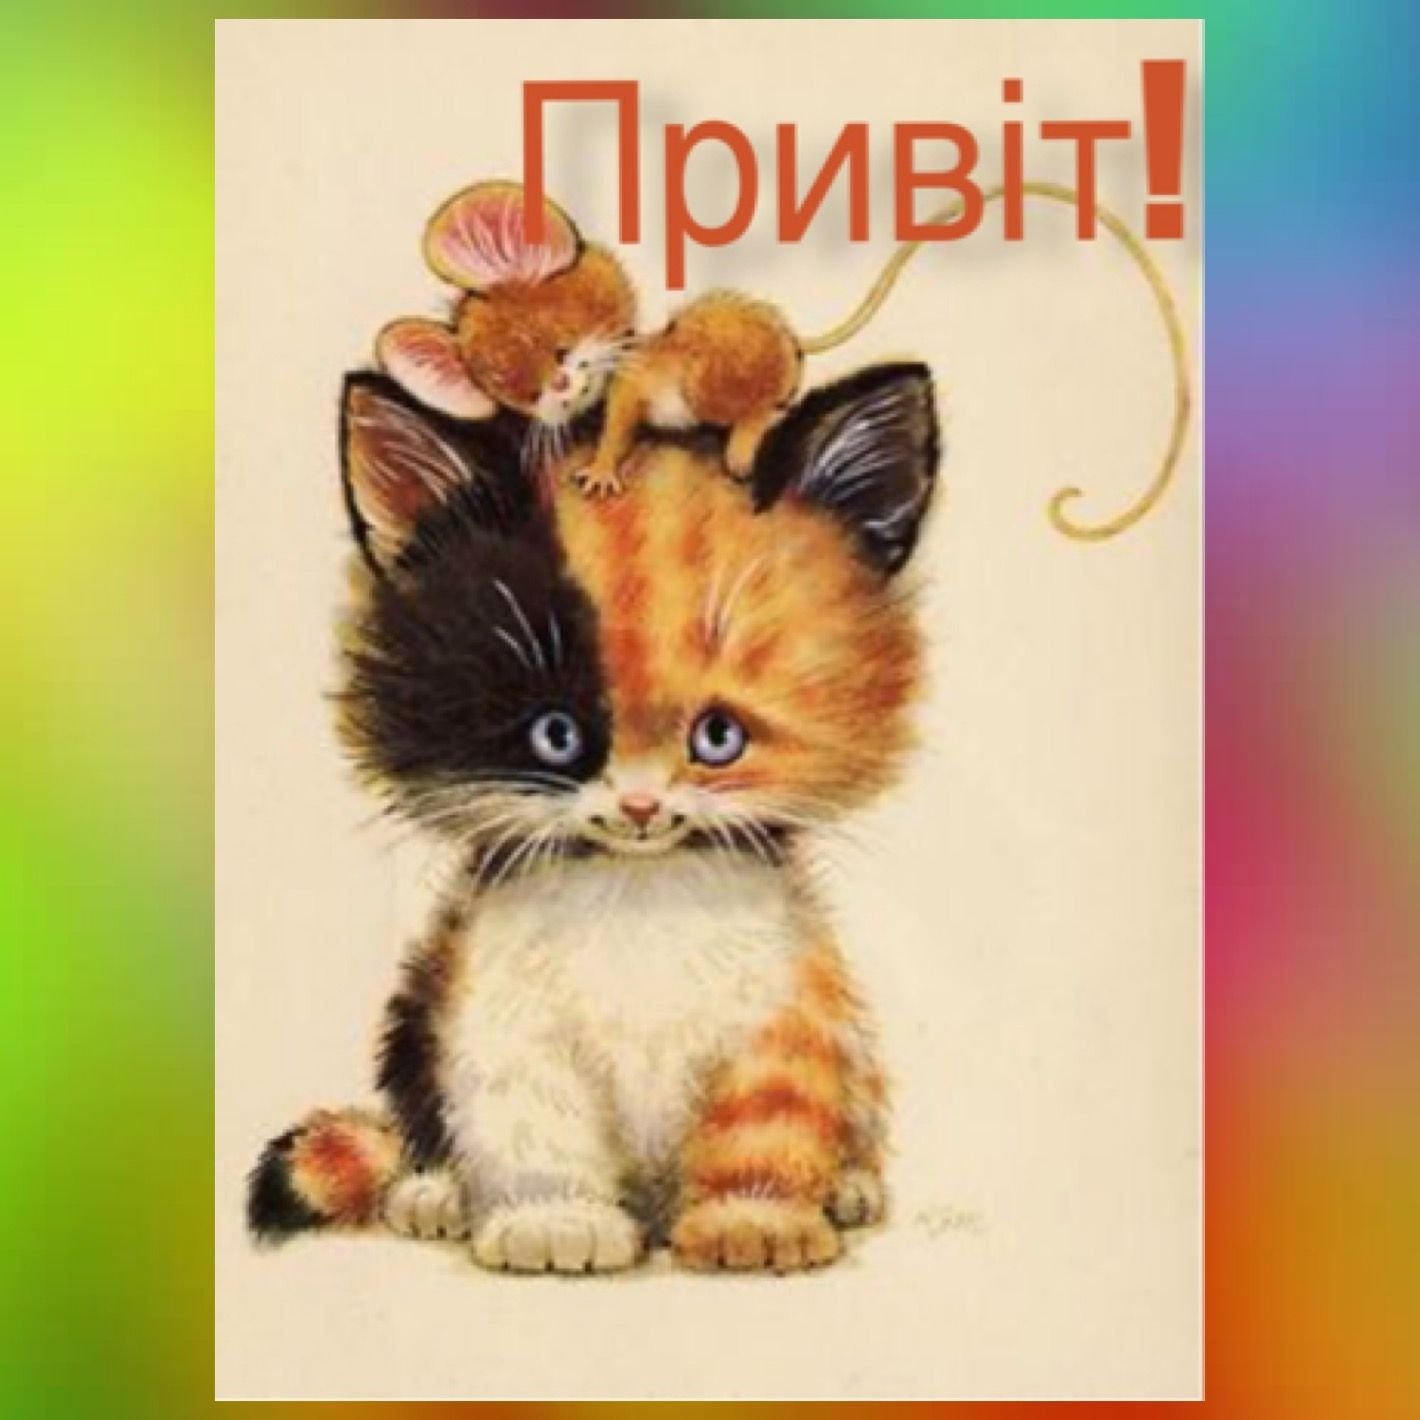 Красивые открытки с кошками. Коты иллюстрации. Открытки с котятами. Забавные милые иллюстрации. Открыток с изображением котят.